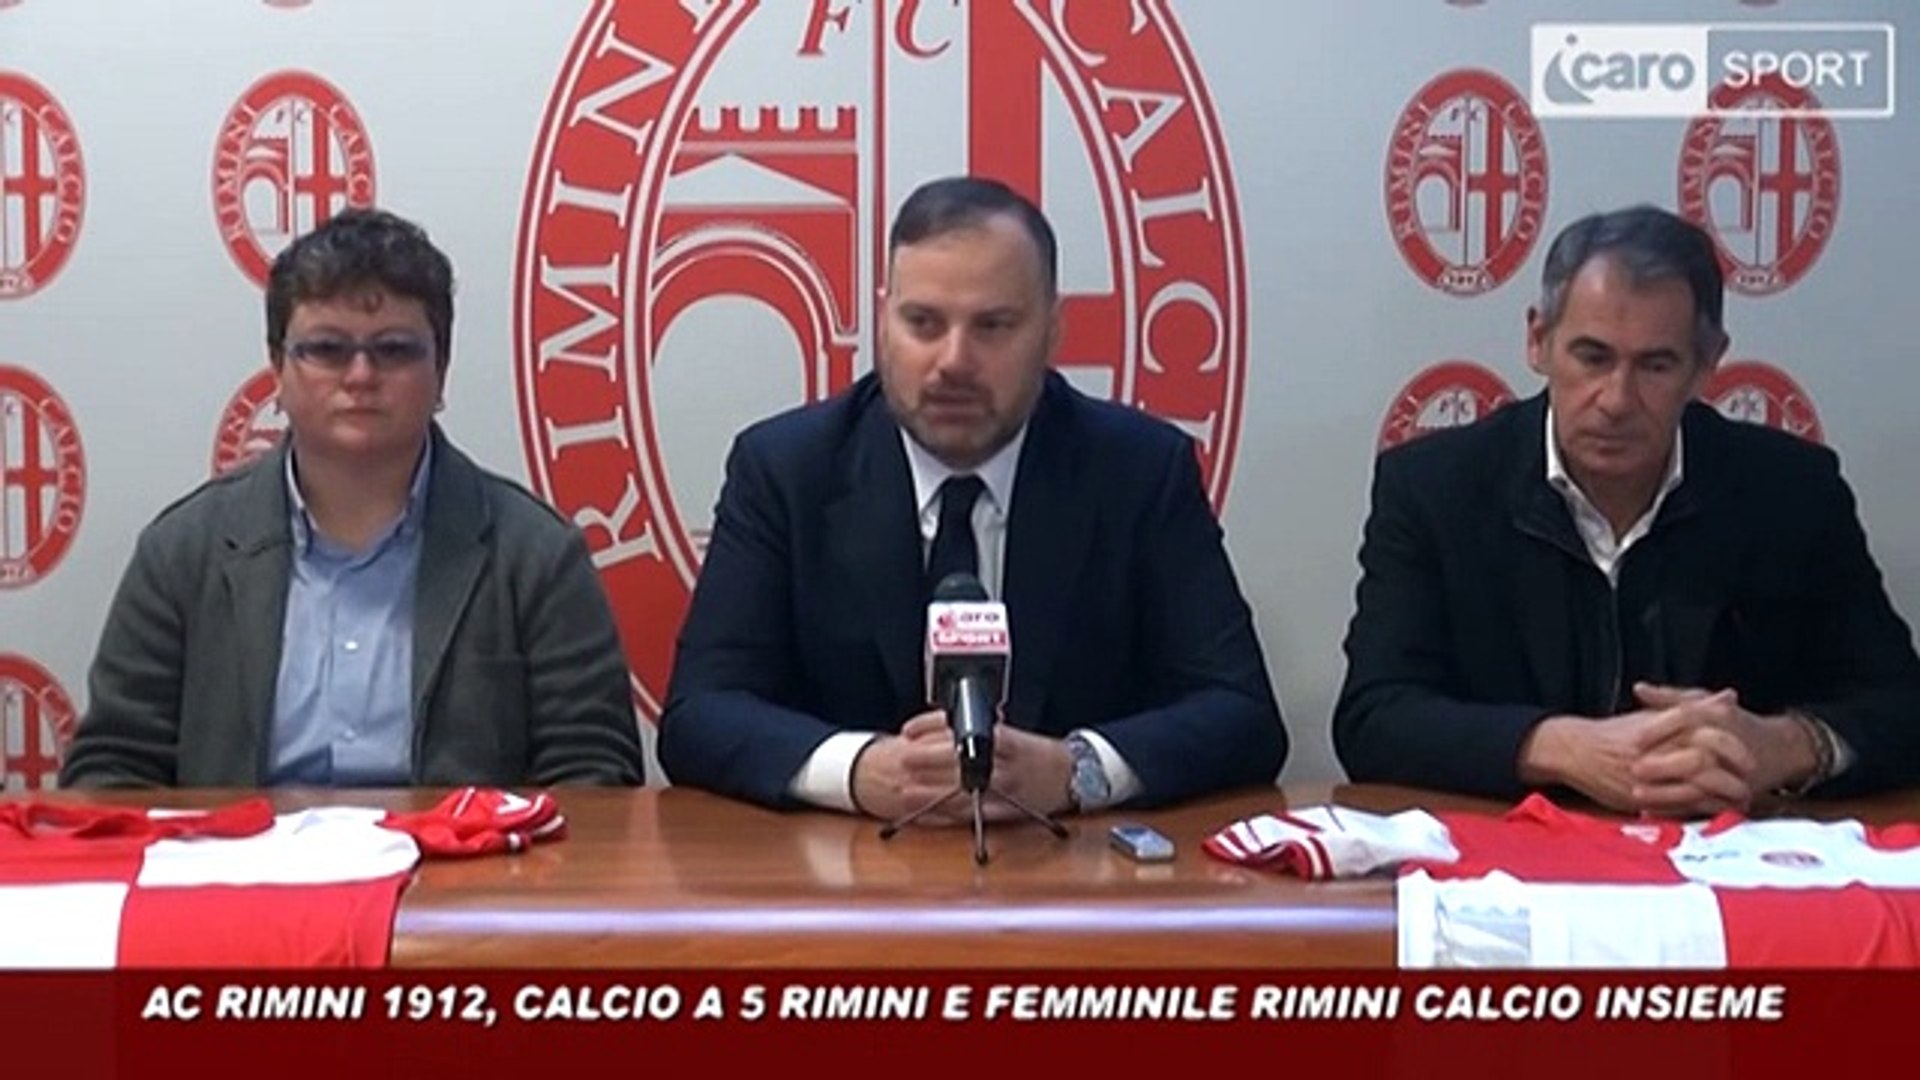 Icaro Sport. Unione Rimini Calcio, Calcio a 5 Rimini e Femminile Rimini: la  conferenza stampa - Video Dailymotion